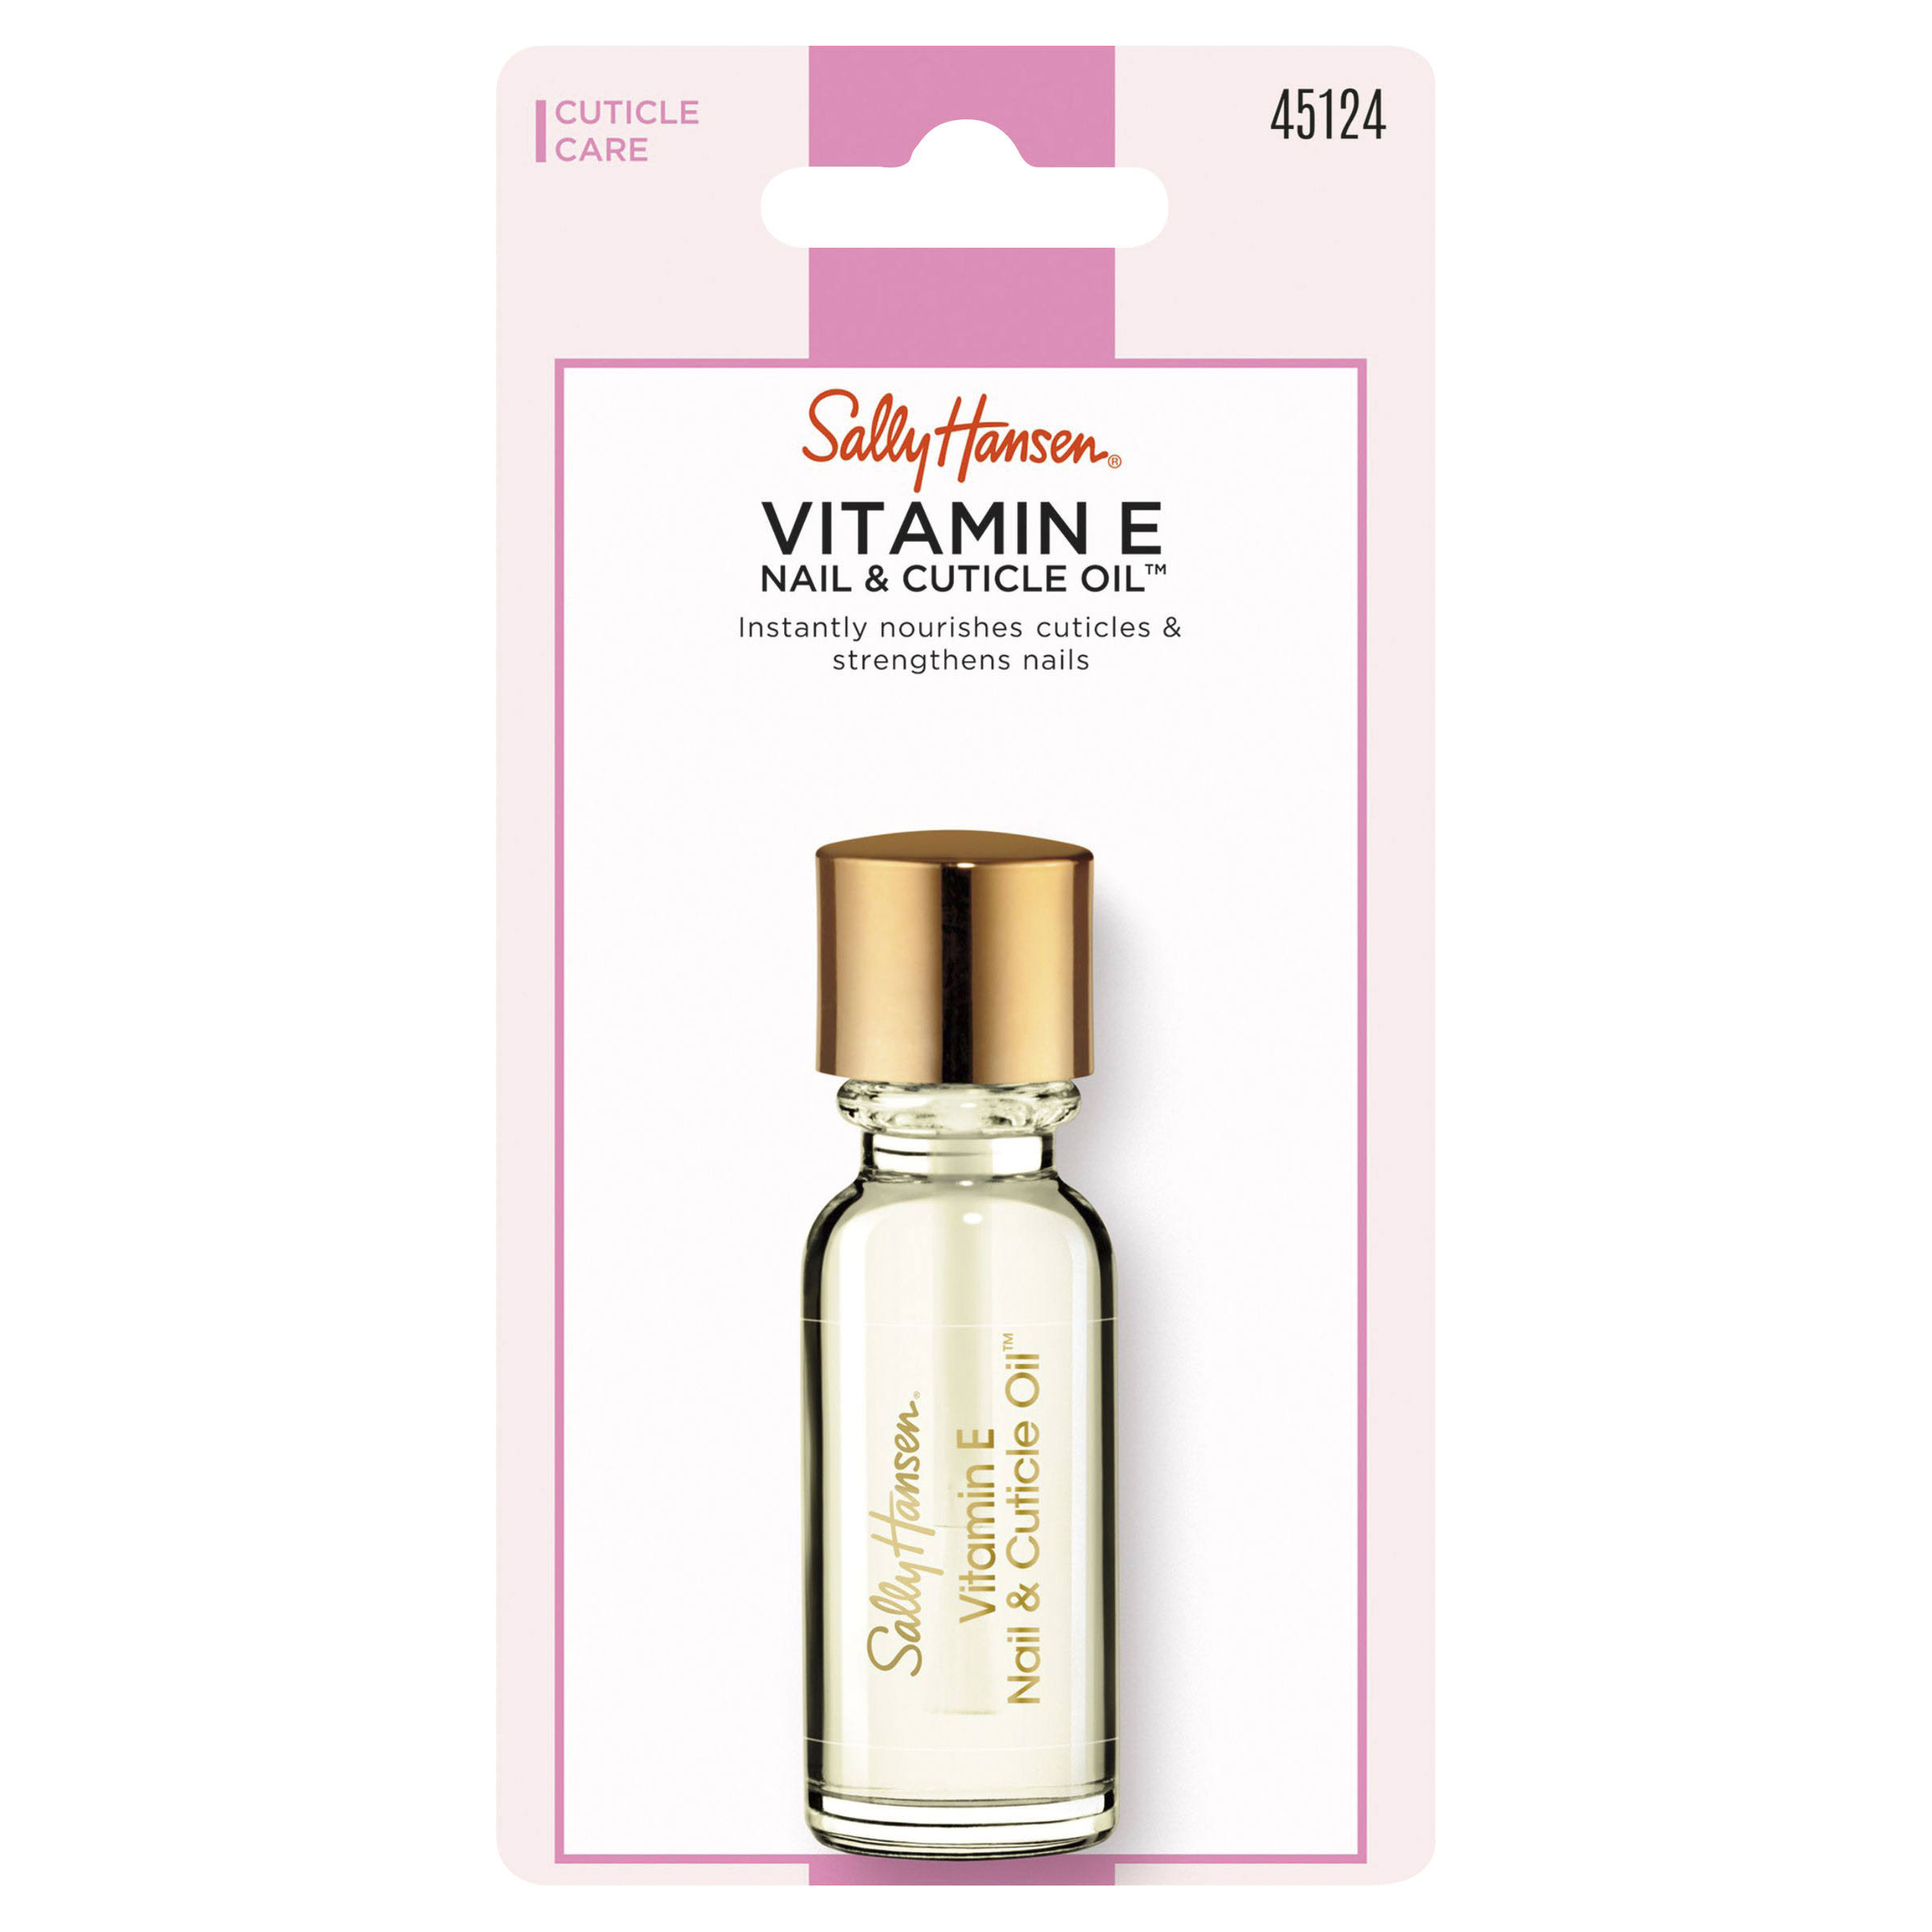 Sally Hansen Nail & Cuticle Oil, Vitamin E - 0.45 fl oz